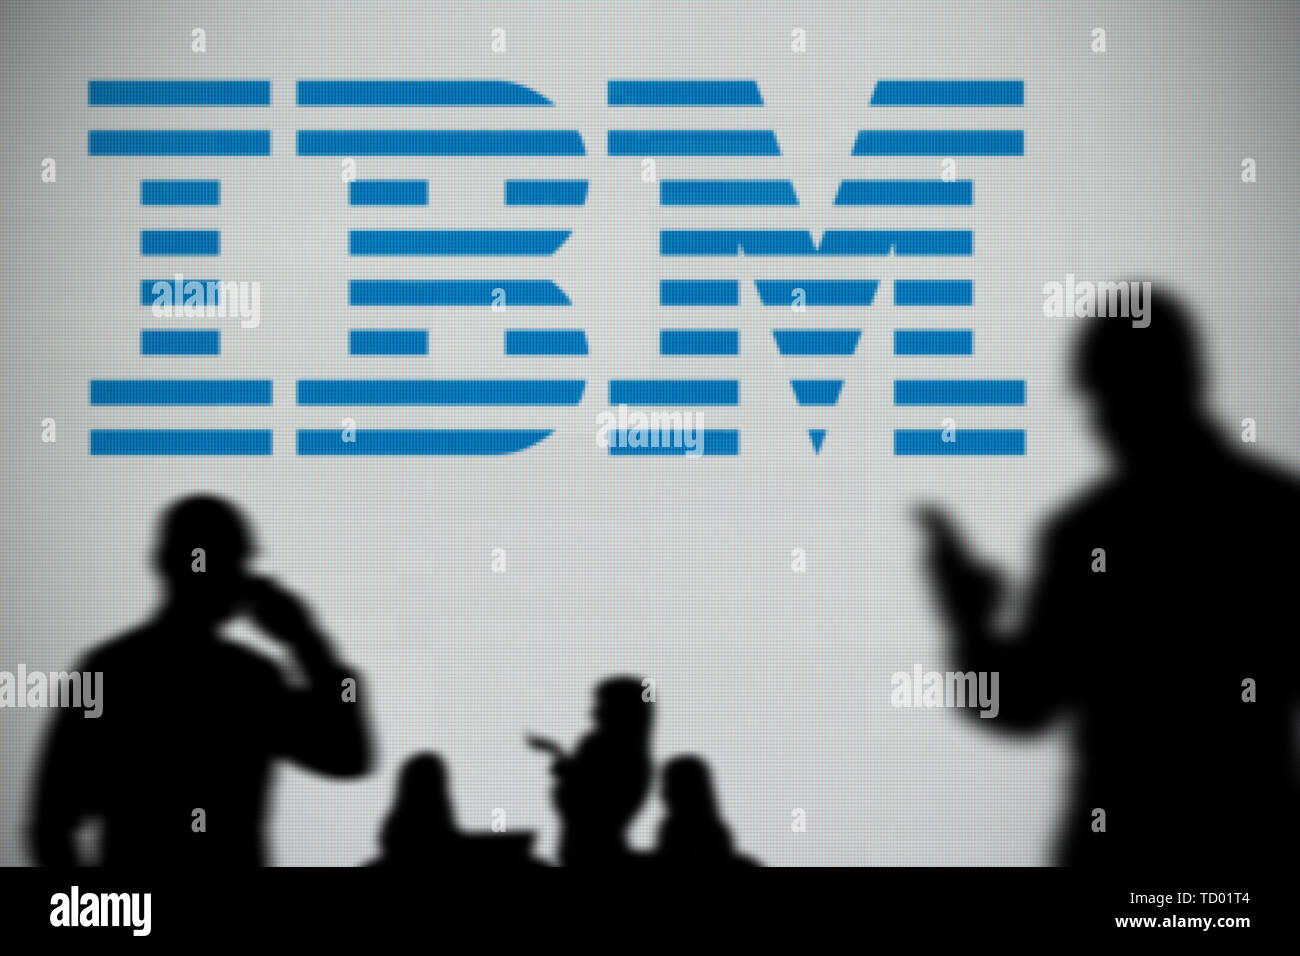 El logotipo de IBM es visto en una pantalla LED en el fondo mientras una silueta persona utiliza un smartphone en primer plano (uso Editorial solamente) Foto de stock